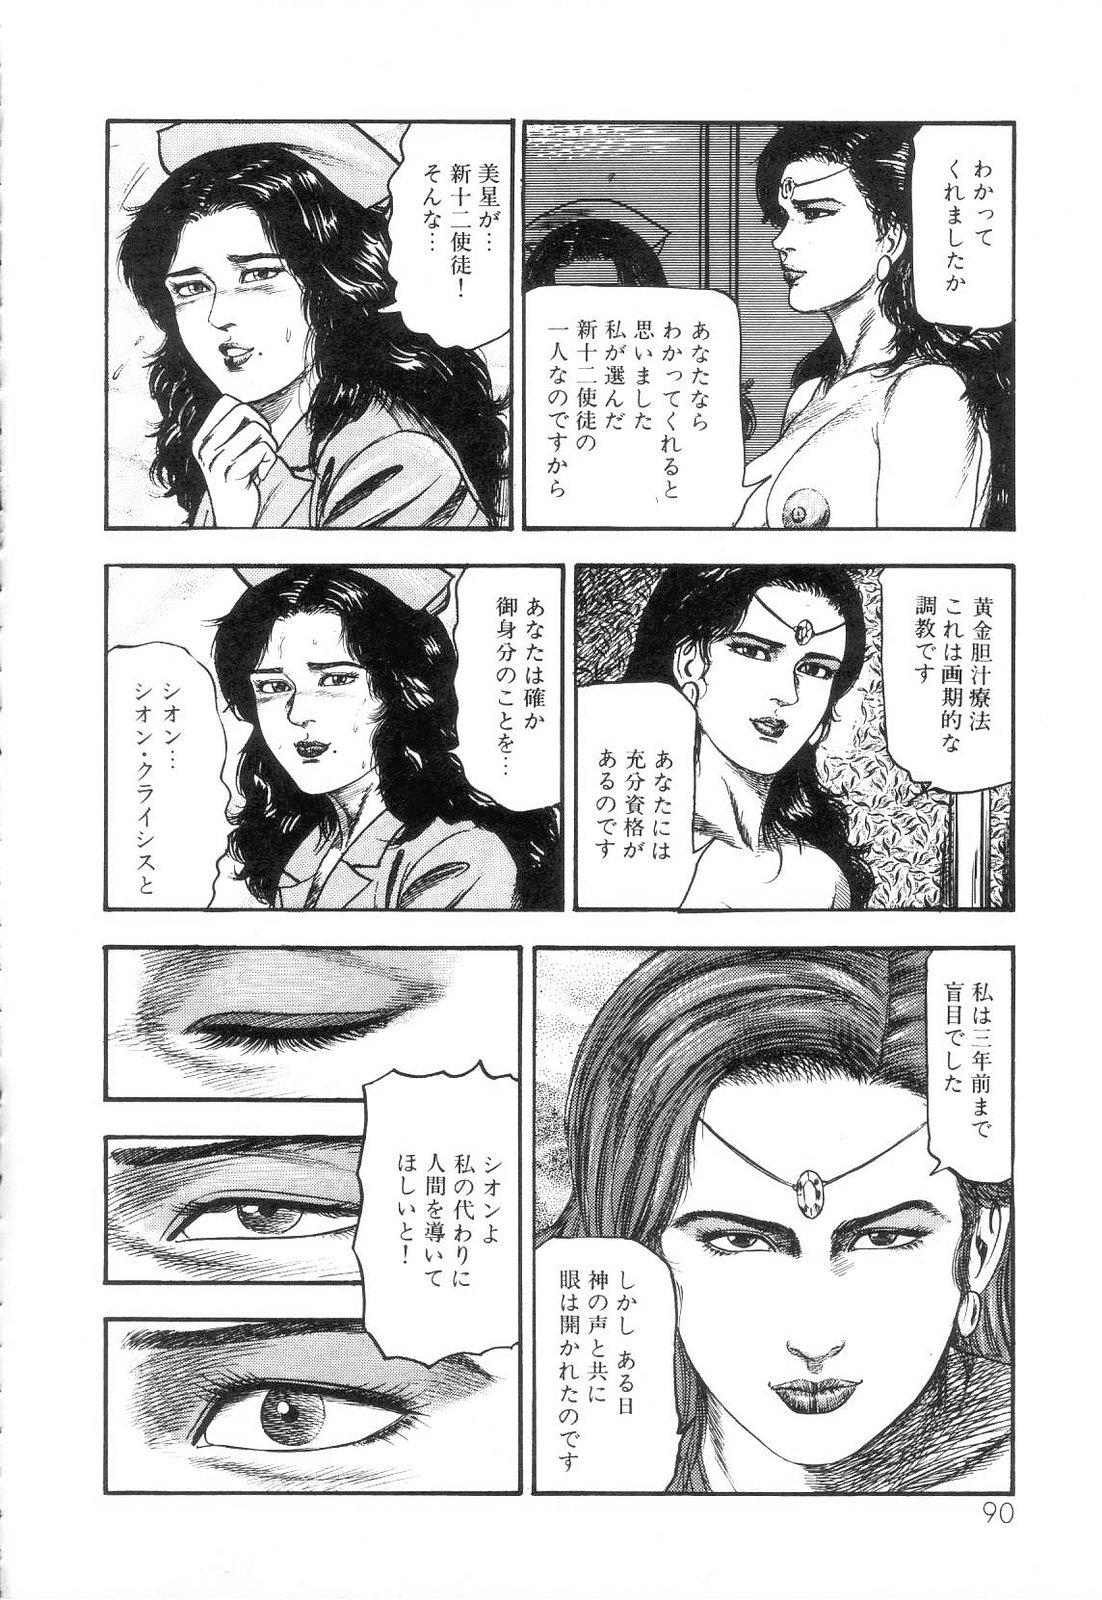 Shiro no Mokushiroku Vol. 3 - Reisai Miho Hen 91